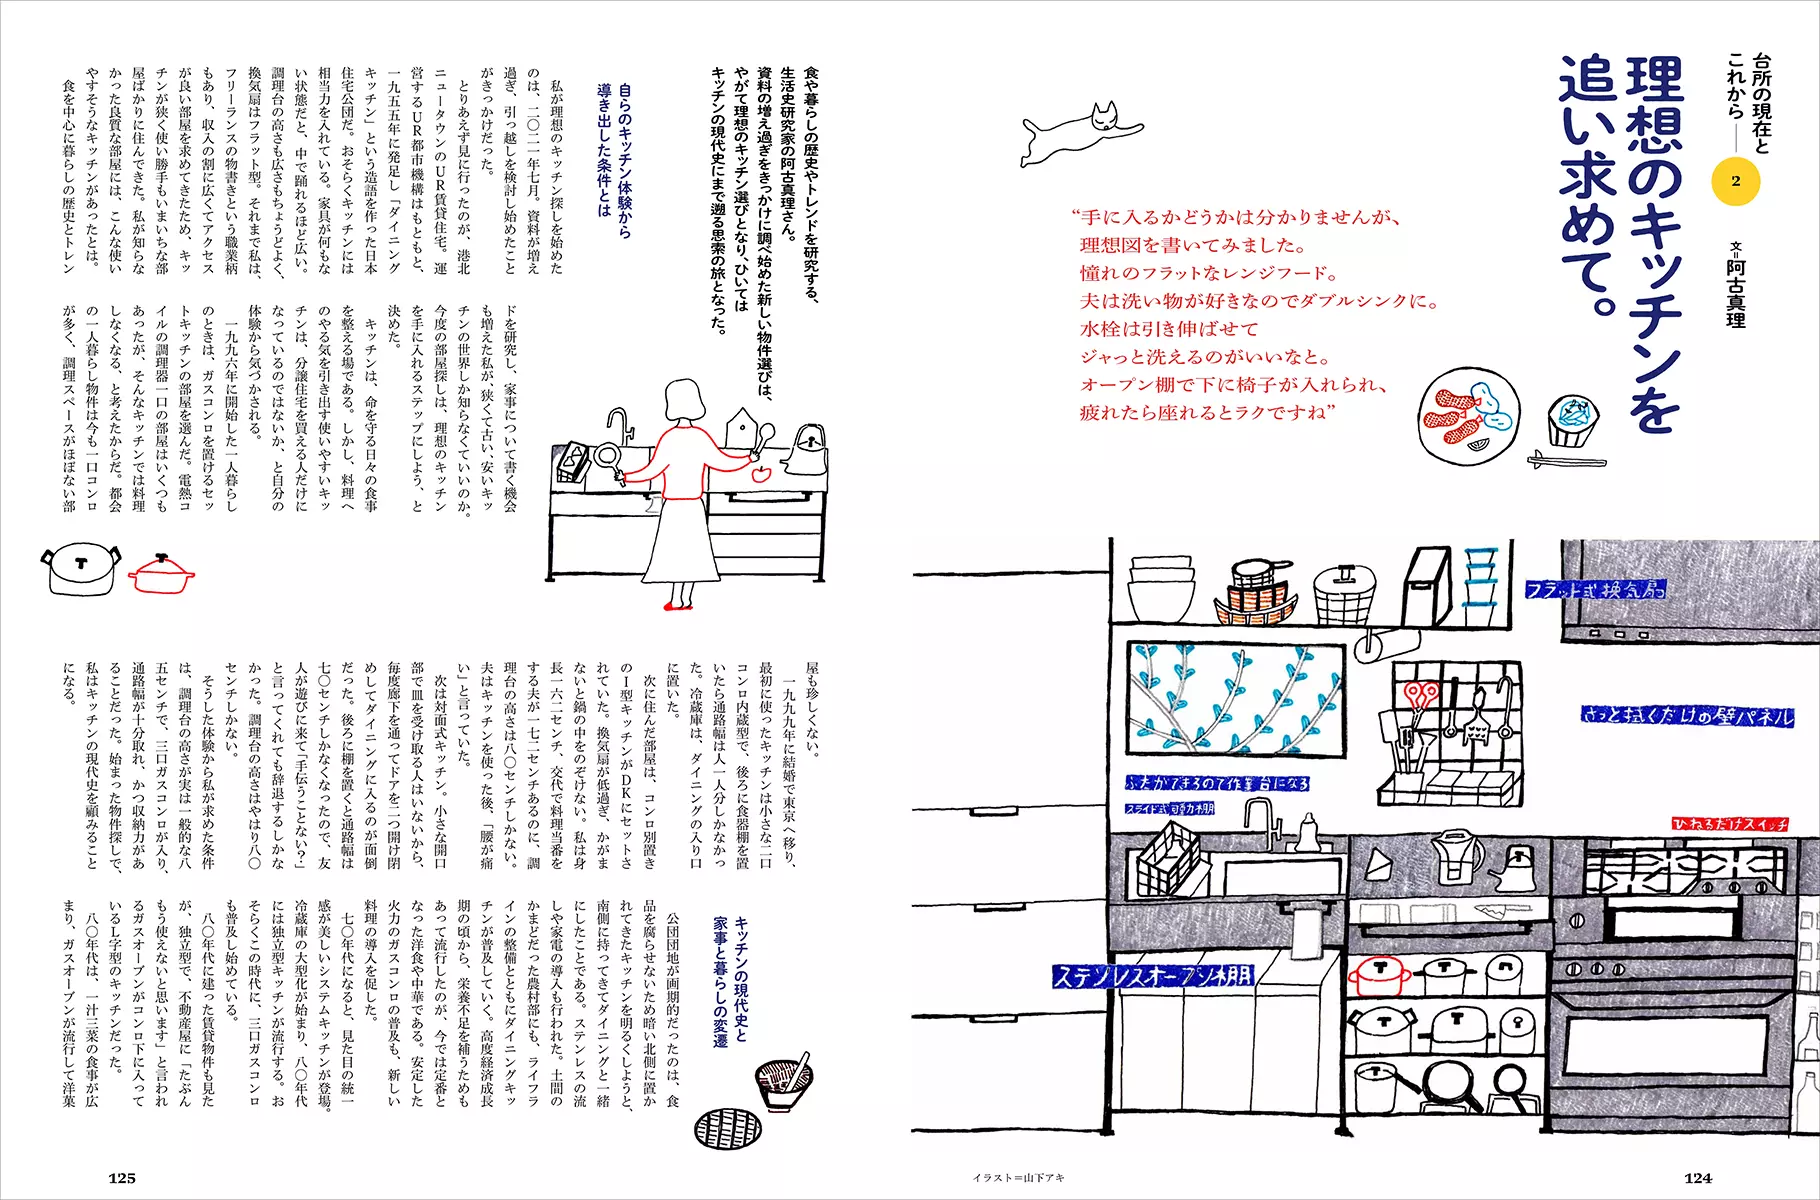 日本の台所一〇〇年 キッチンから愛をこめて |学習と教育を支援する通販会社-YTT Net